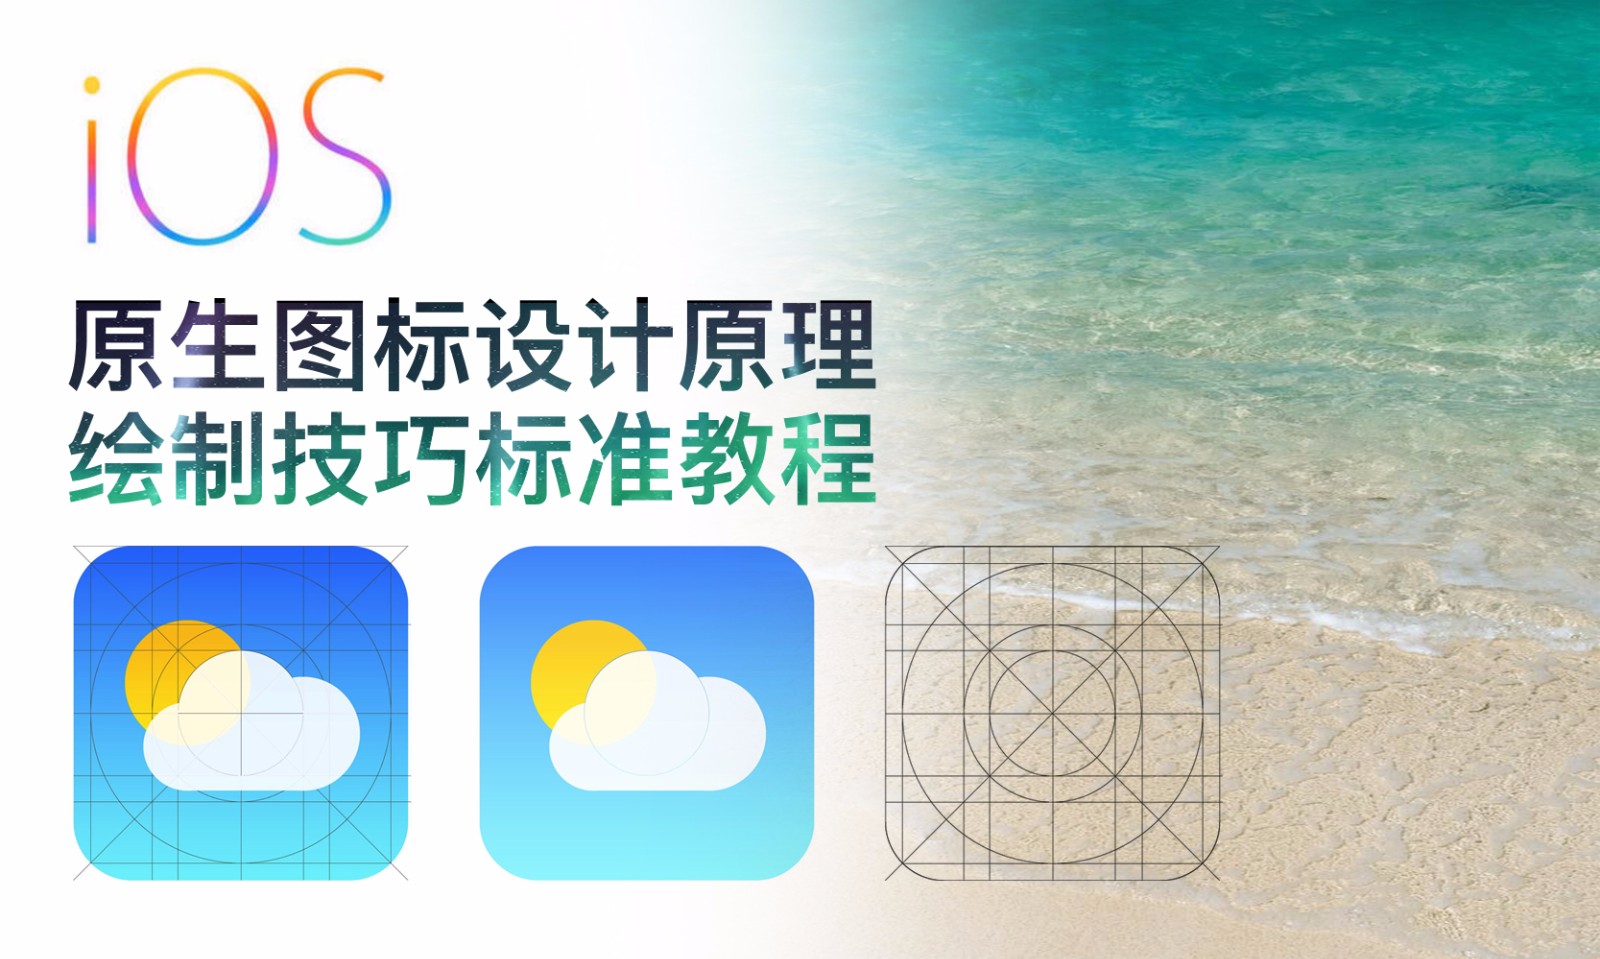 【吴刚大讲堂】iOS原生图标设计原理与绘制技巧标准教程